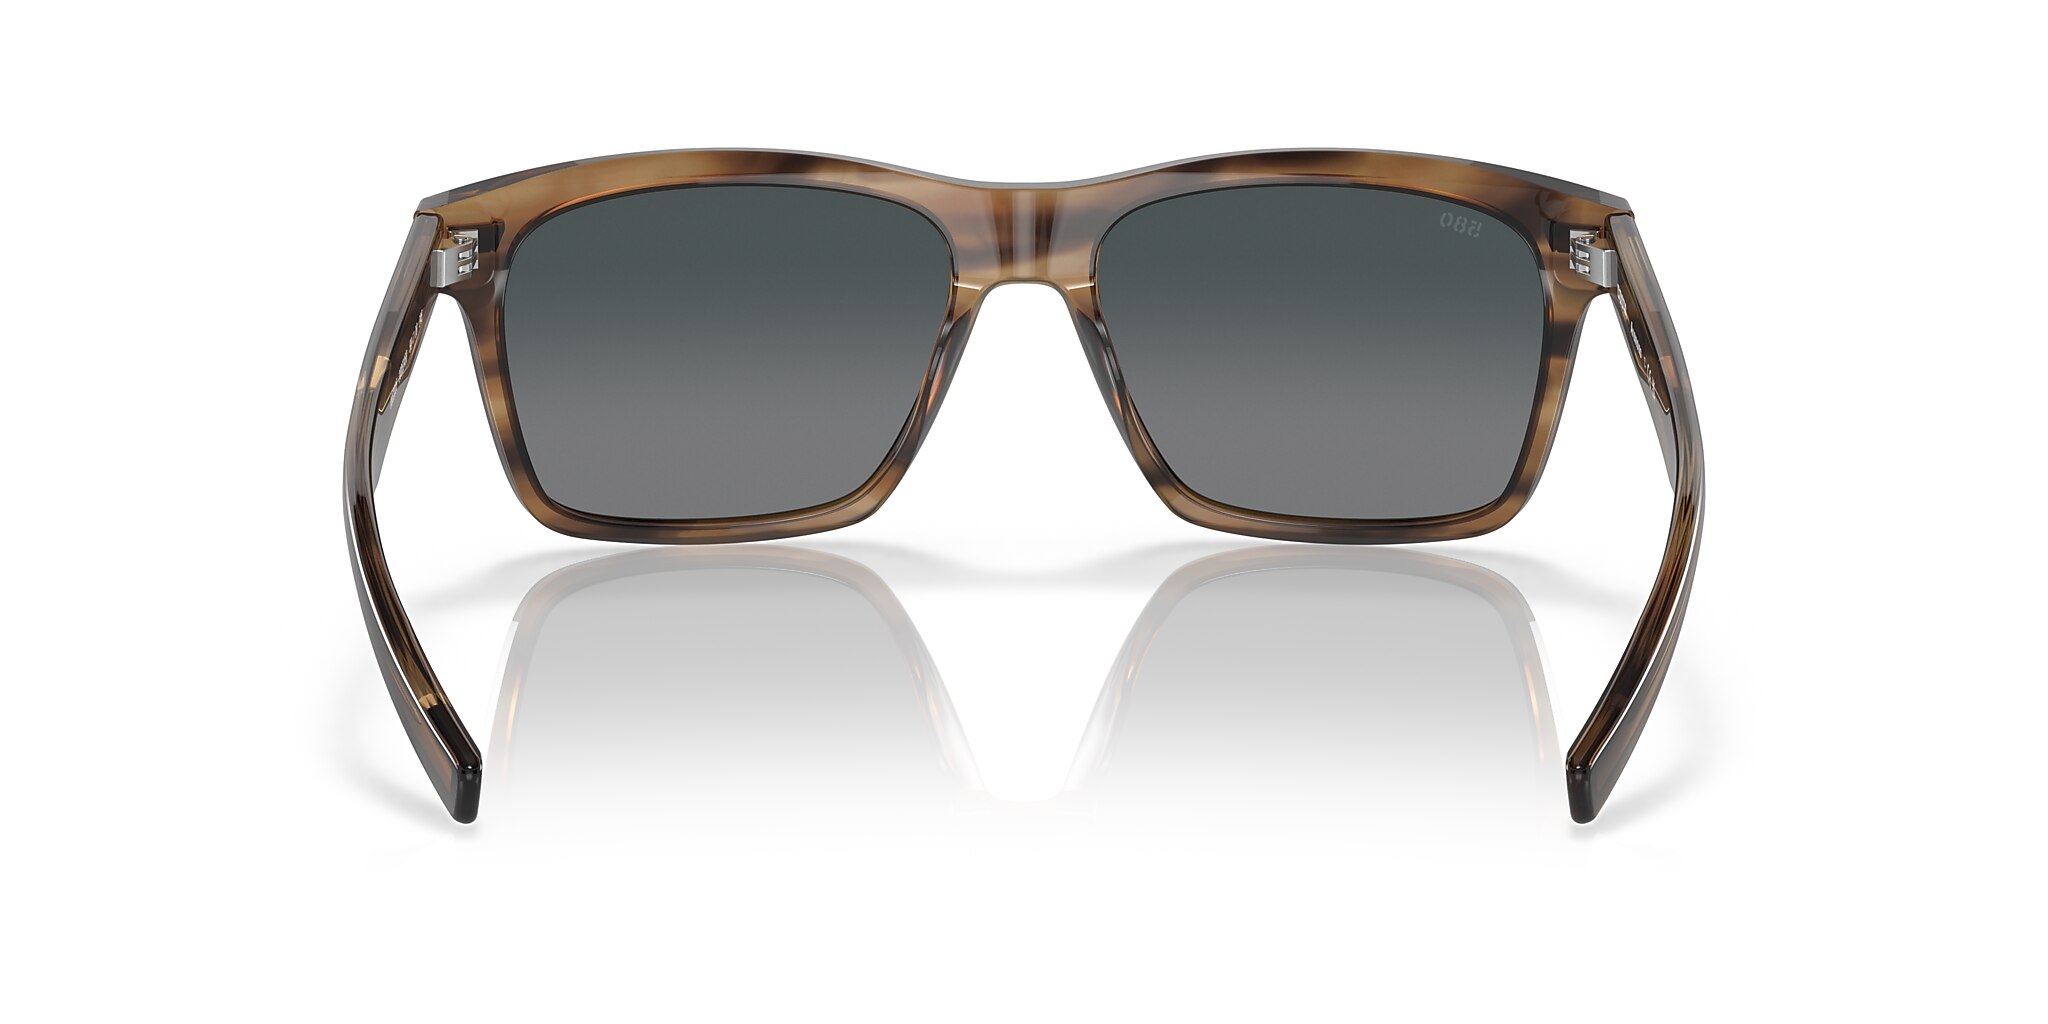 Aransas Polarised Sunglasses in Gray Gradient | Costa Del Mar®